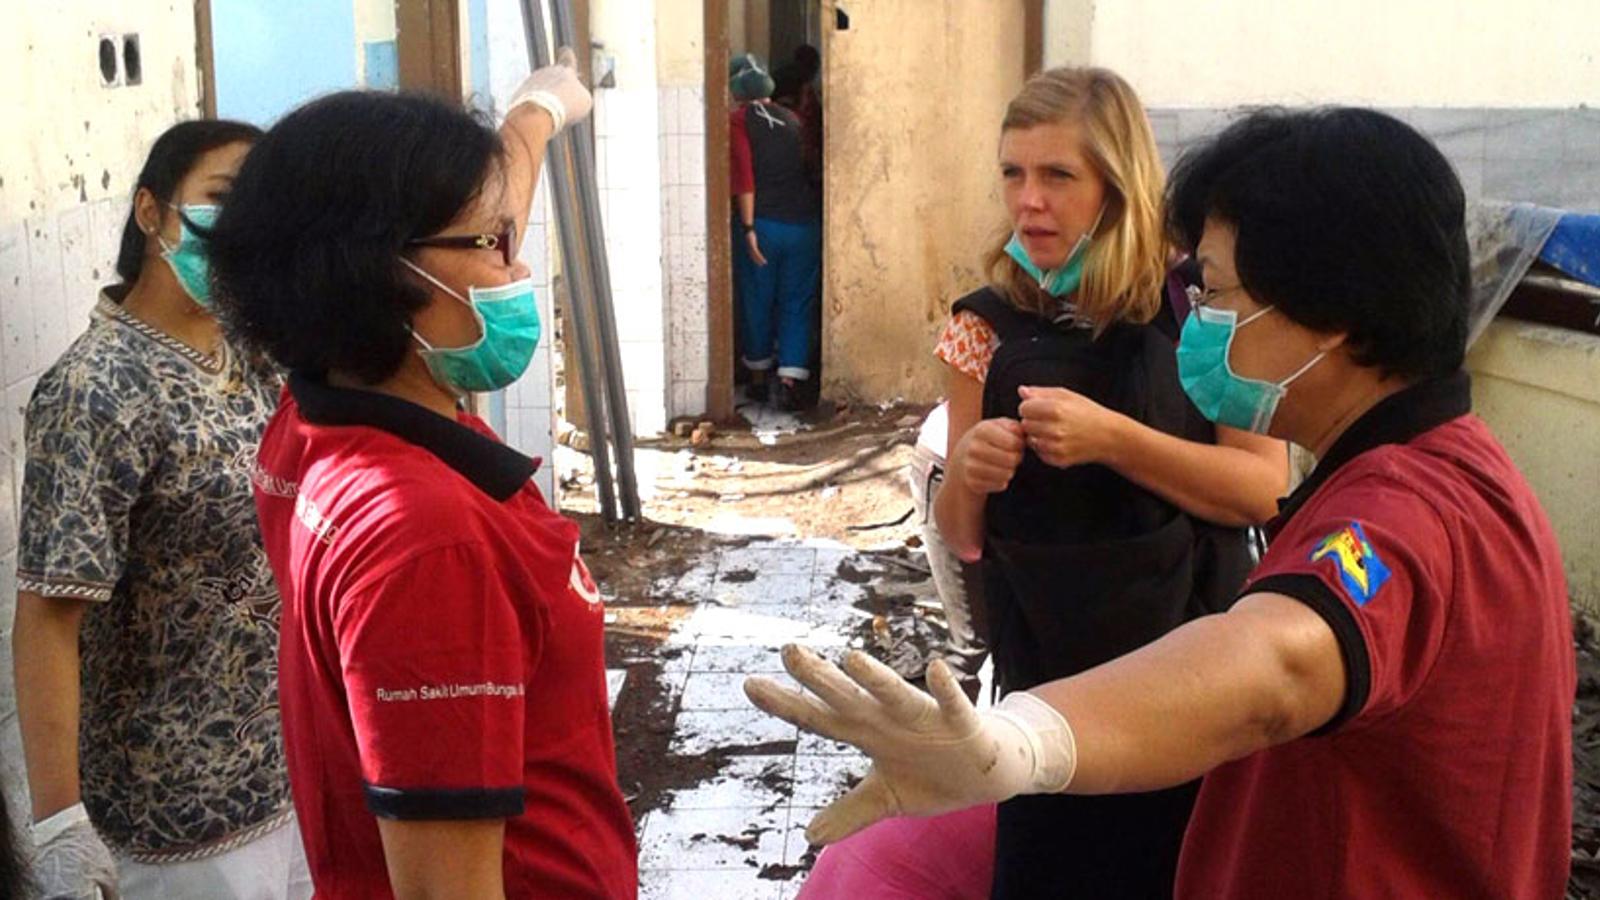 Röjning när sjukhuset i Bandung som drabbats av vattenskador. På bilden står Elin och samtalar med tre kvinnor som arbetar på sjukhuset.